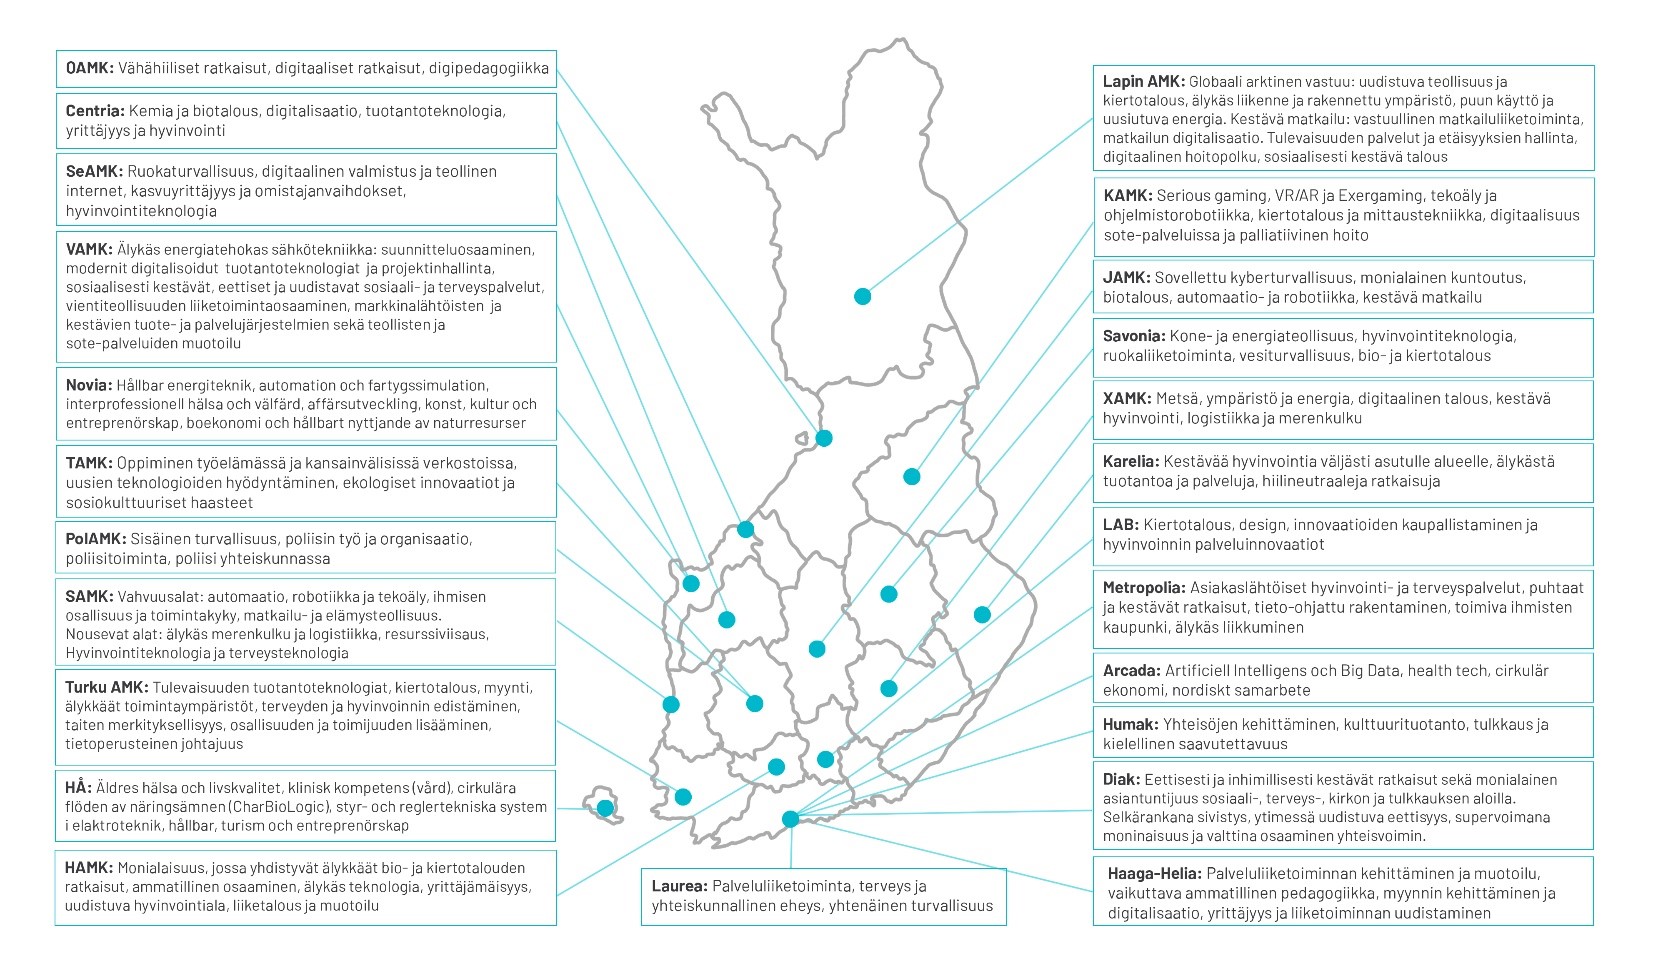 Suomen kartta, jossa esitetty ammattikorkeakoulujen painopistealueet.